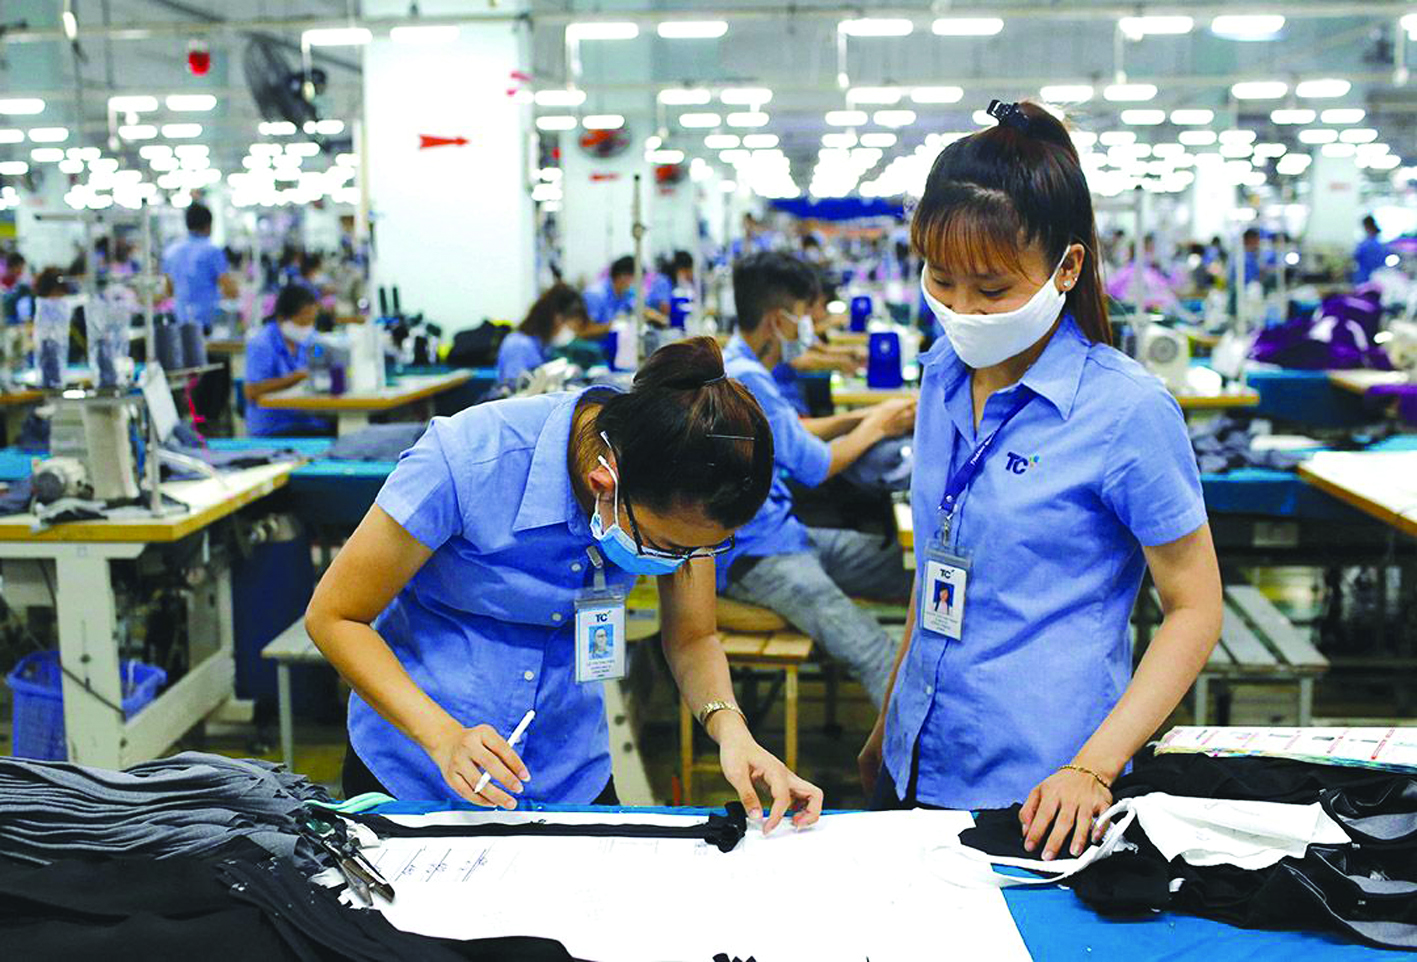  Với RCEP, dệt may Trung Quốc có thể được hưởng ưu đãi thuế tốt hơn trước và có lợi thế cạnh tranh hơn so với doanh nghiệp Việt Nam.